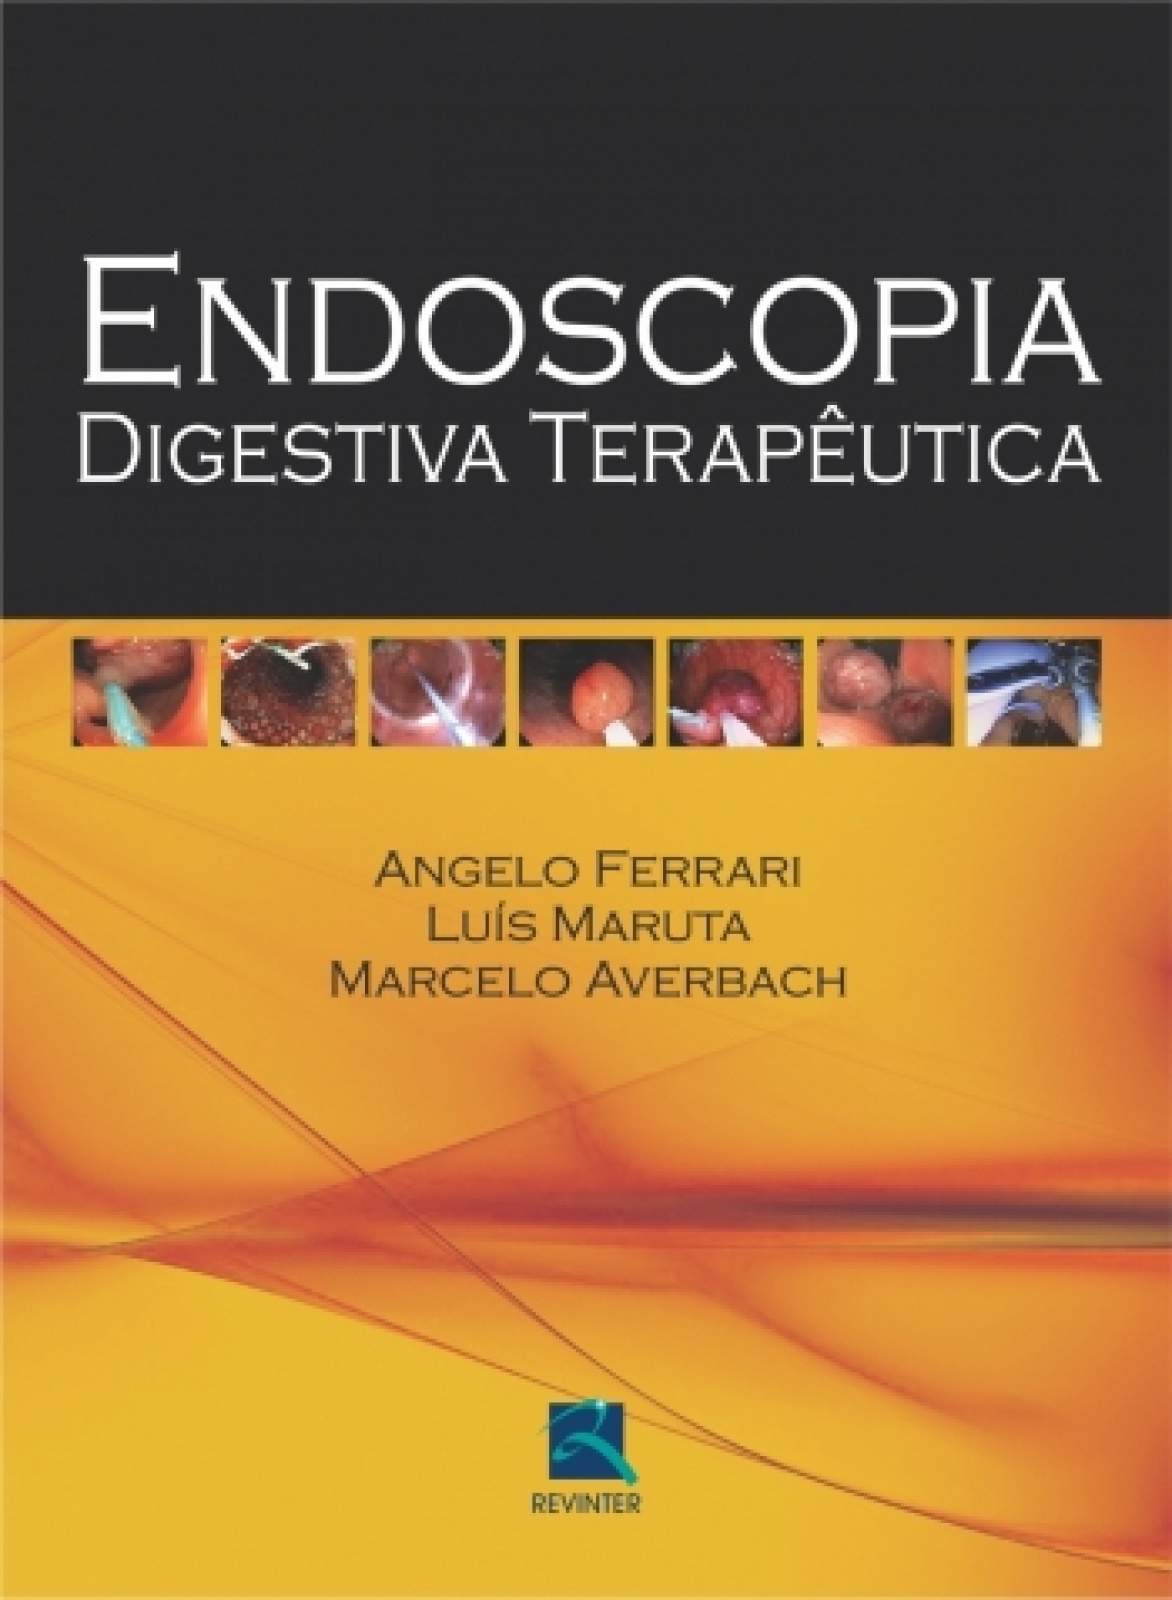 Endoscopia Digestiva Terapeutica